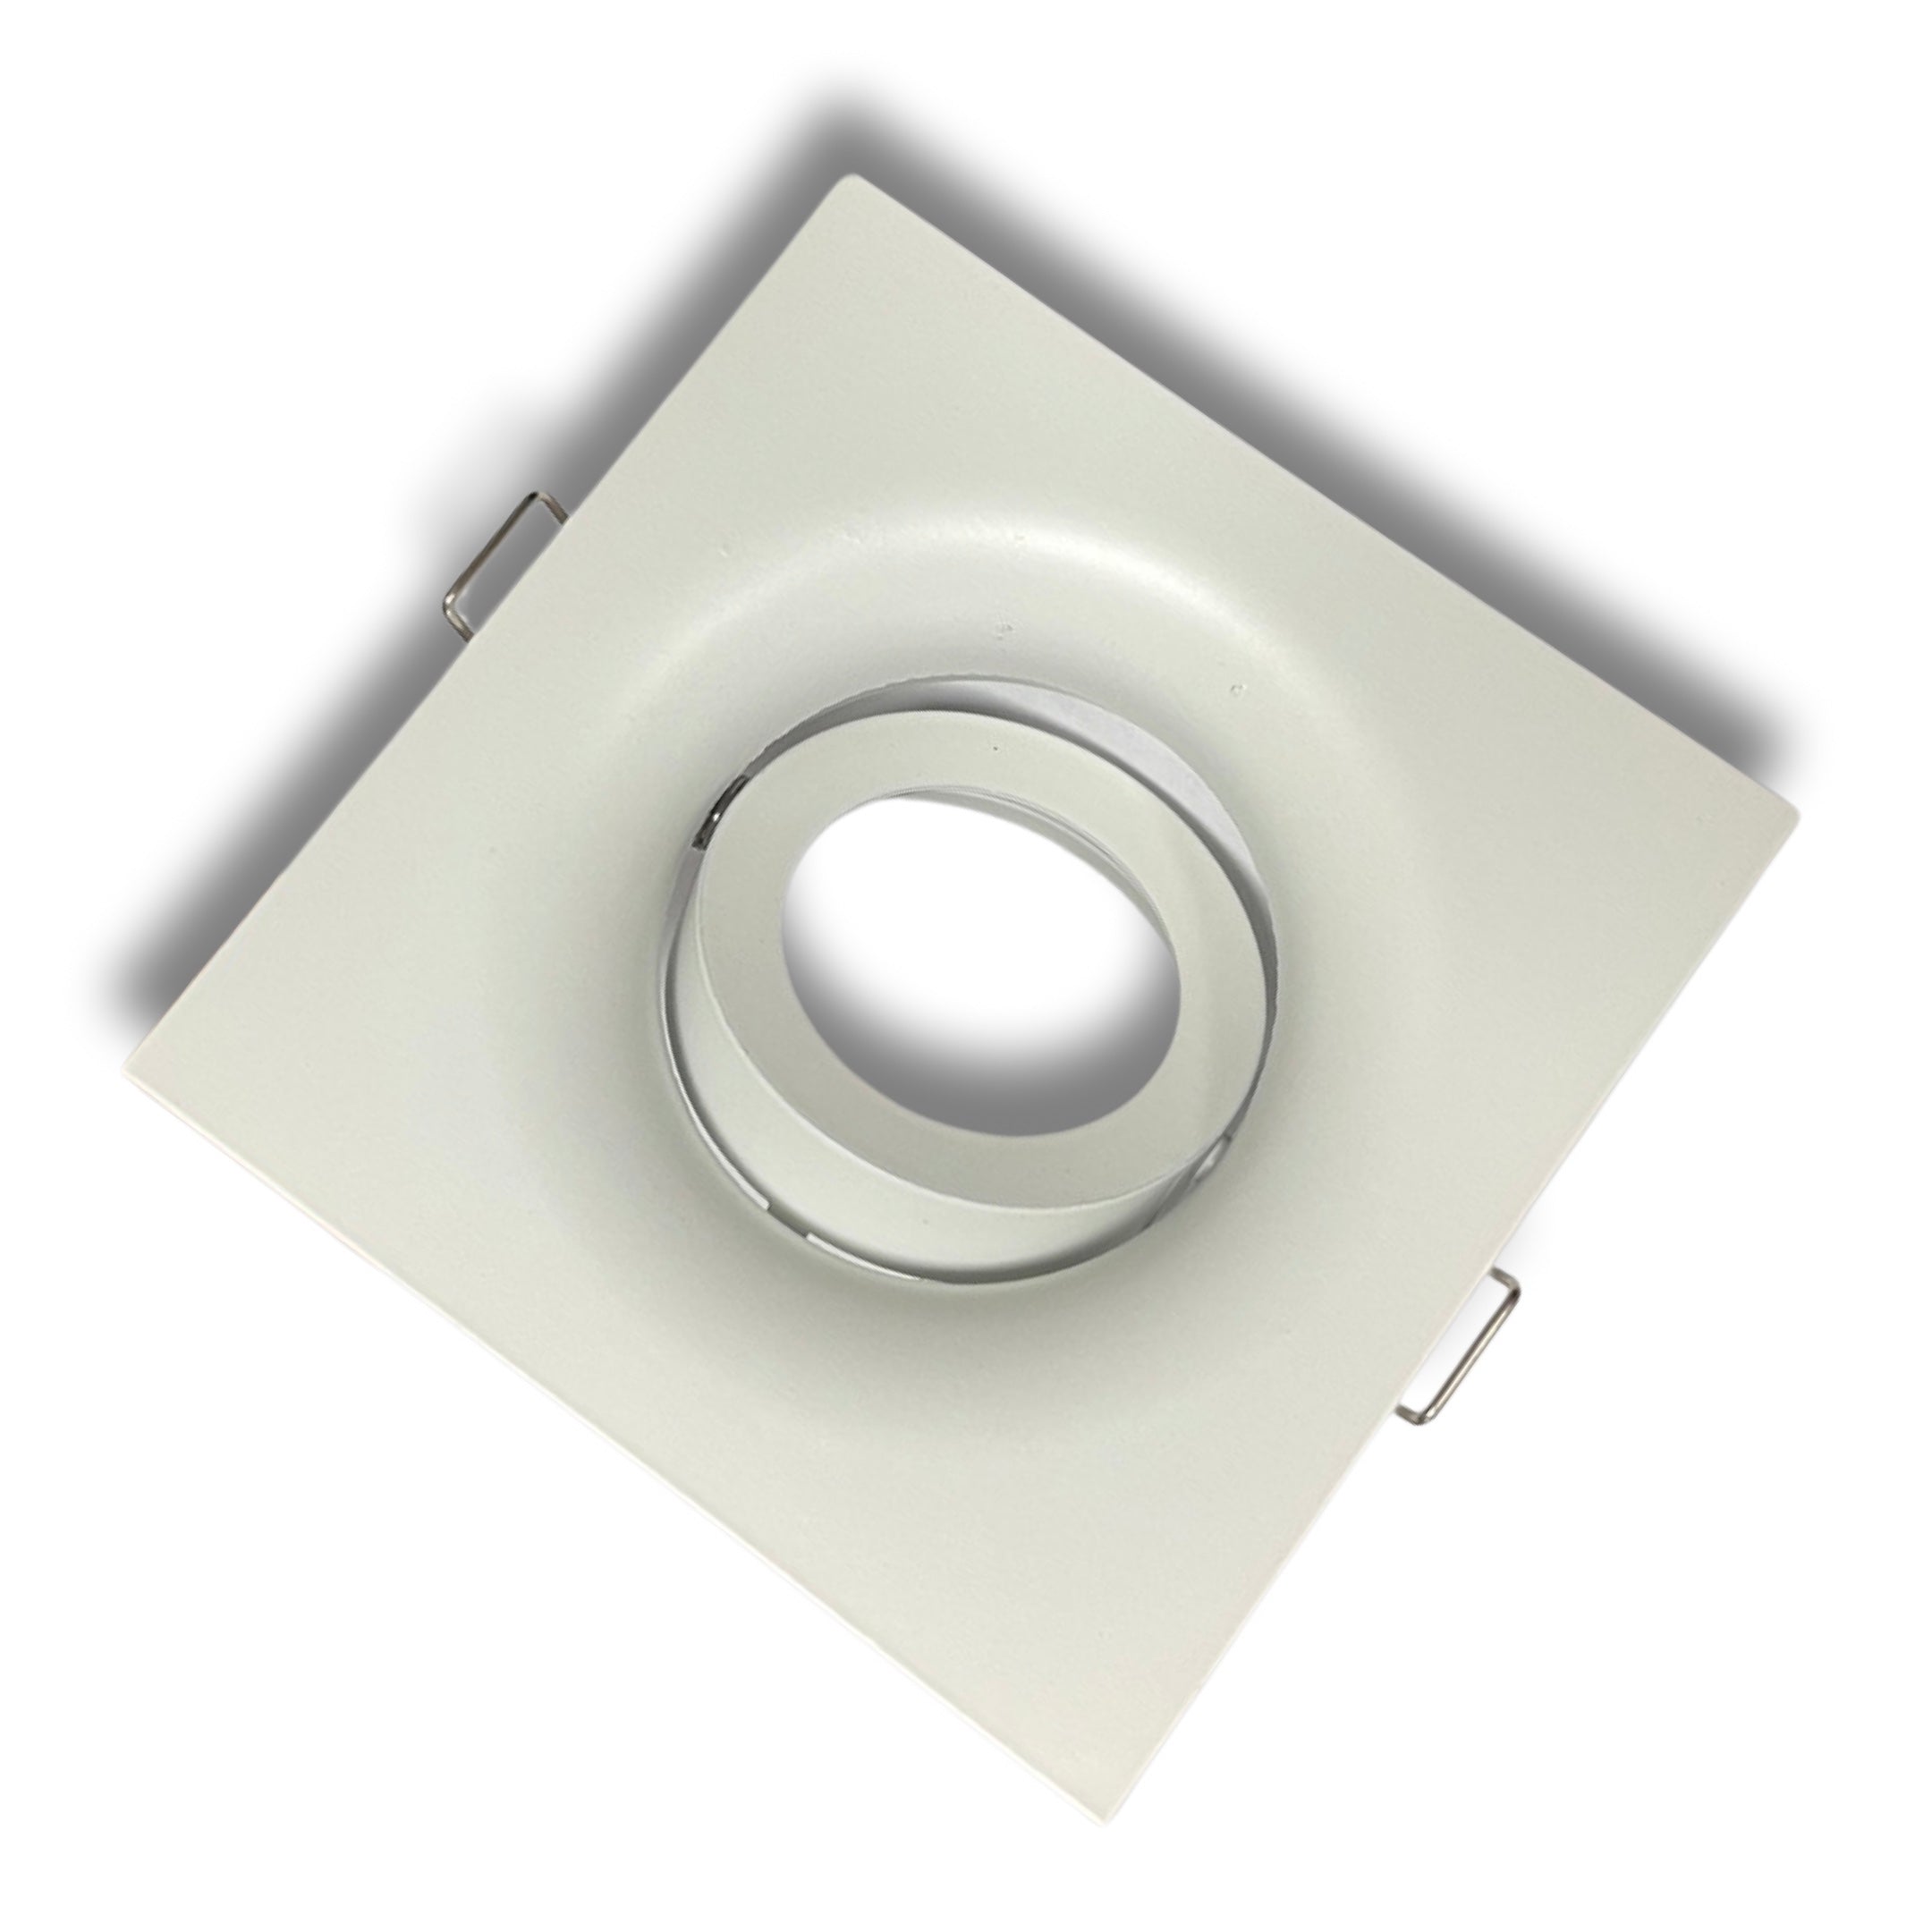 Large Square Matt White GU10 Tilt Led Ceiling Recessed Downlight Spotlights UKEW®